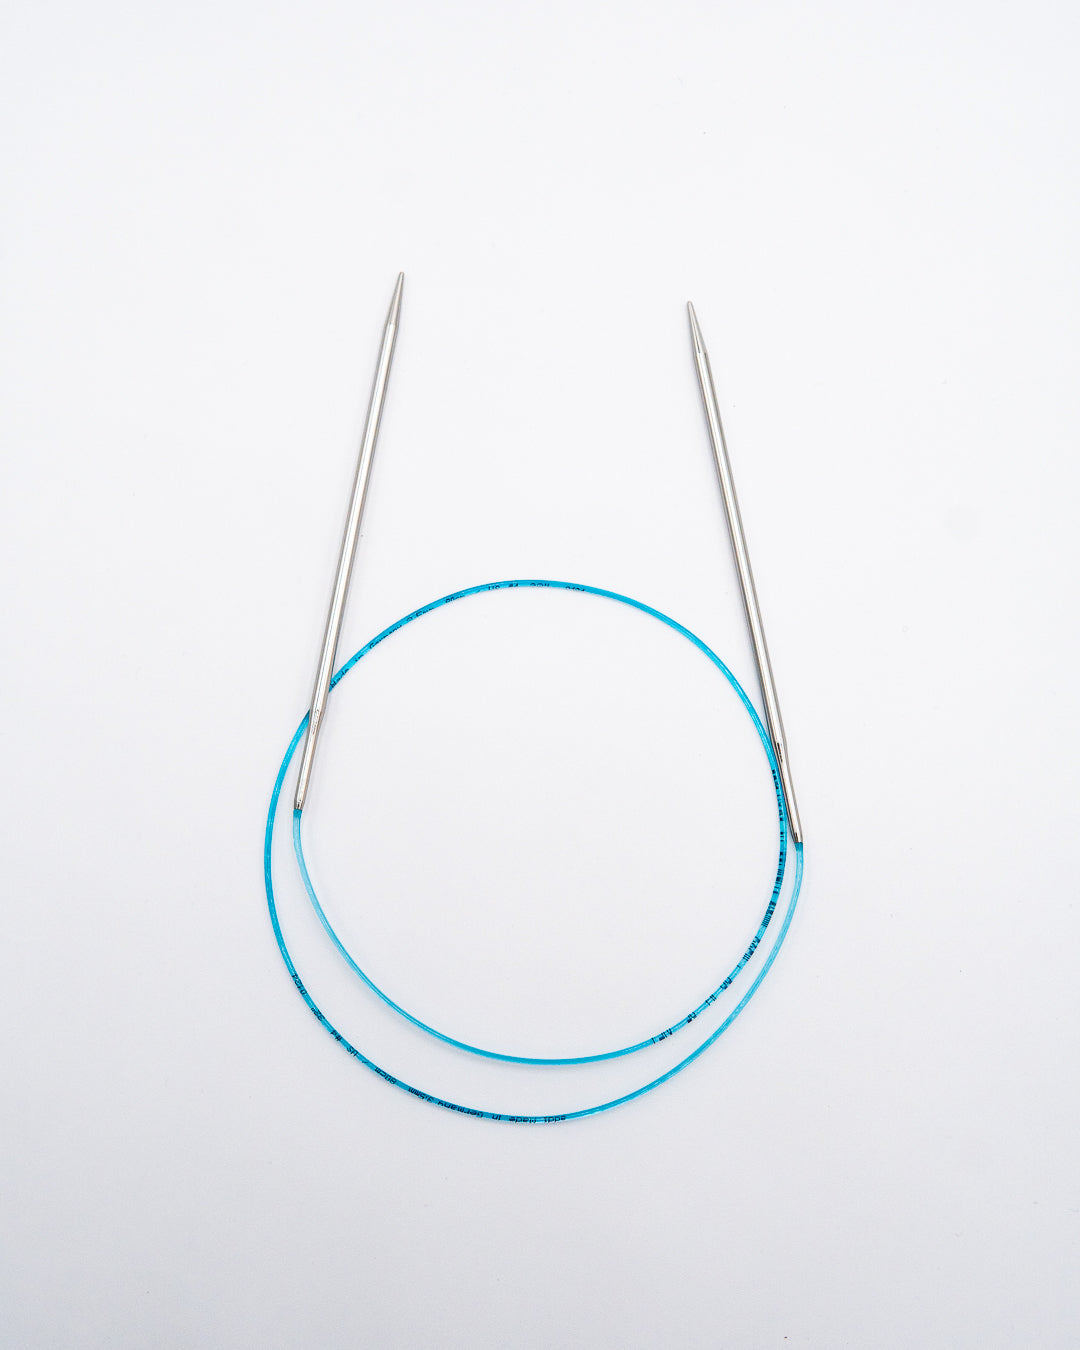 Addi Circular Knitting Needles - Rocket (32" / 80 cm)